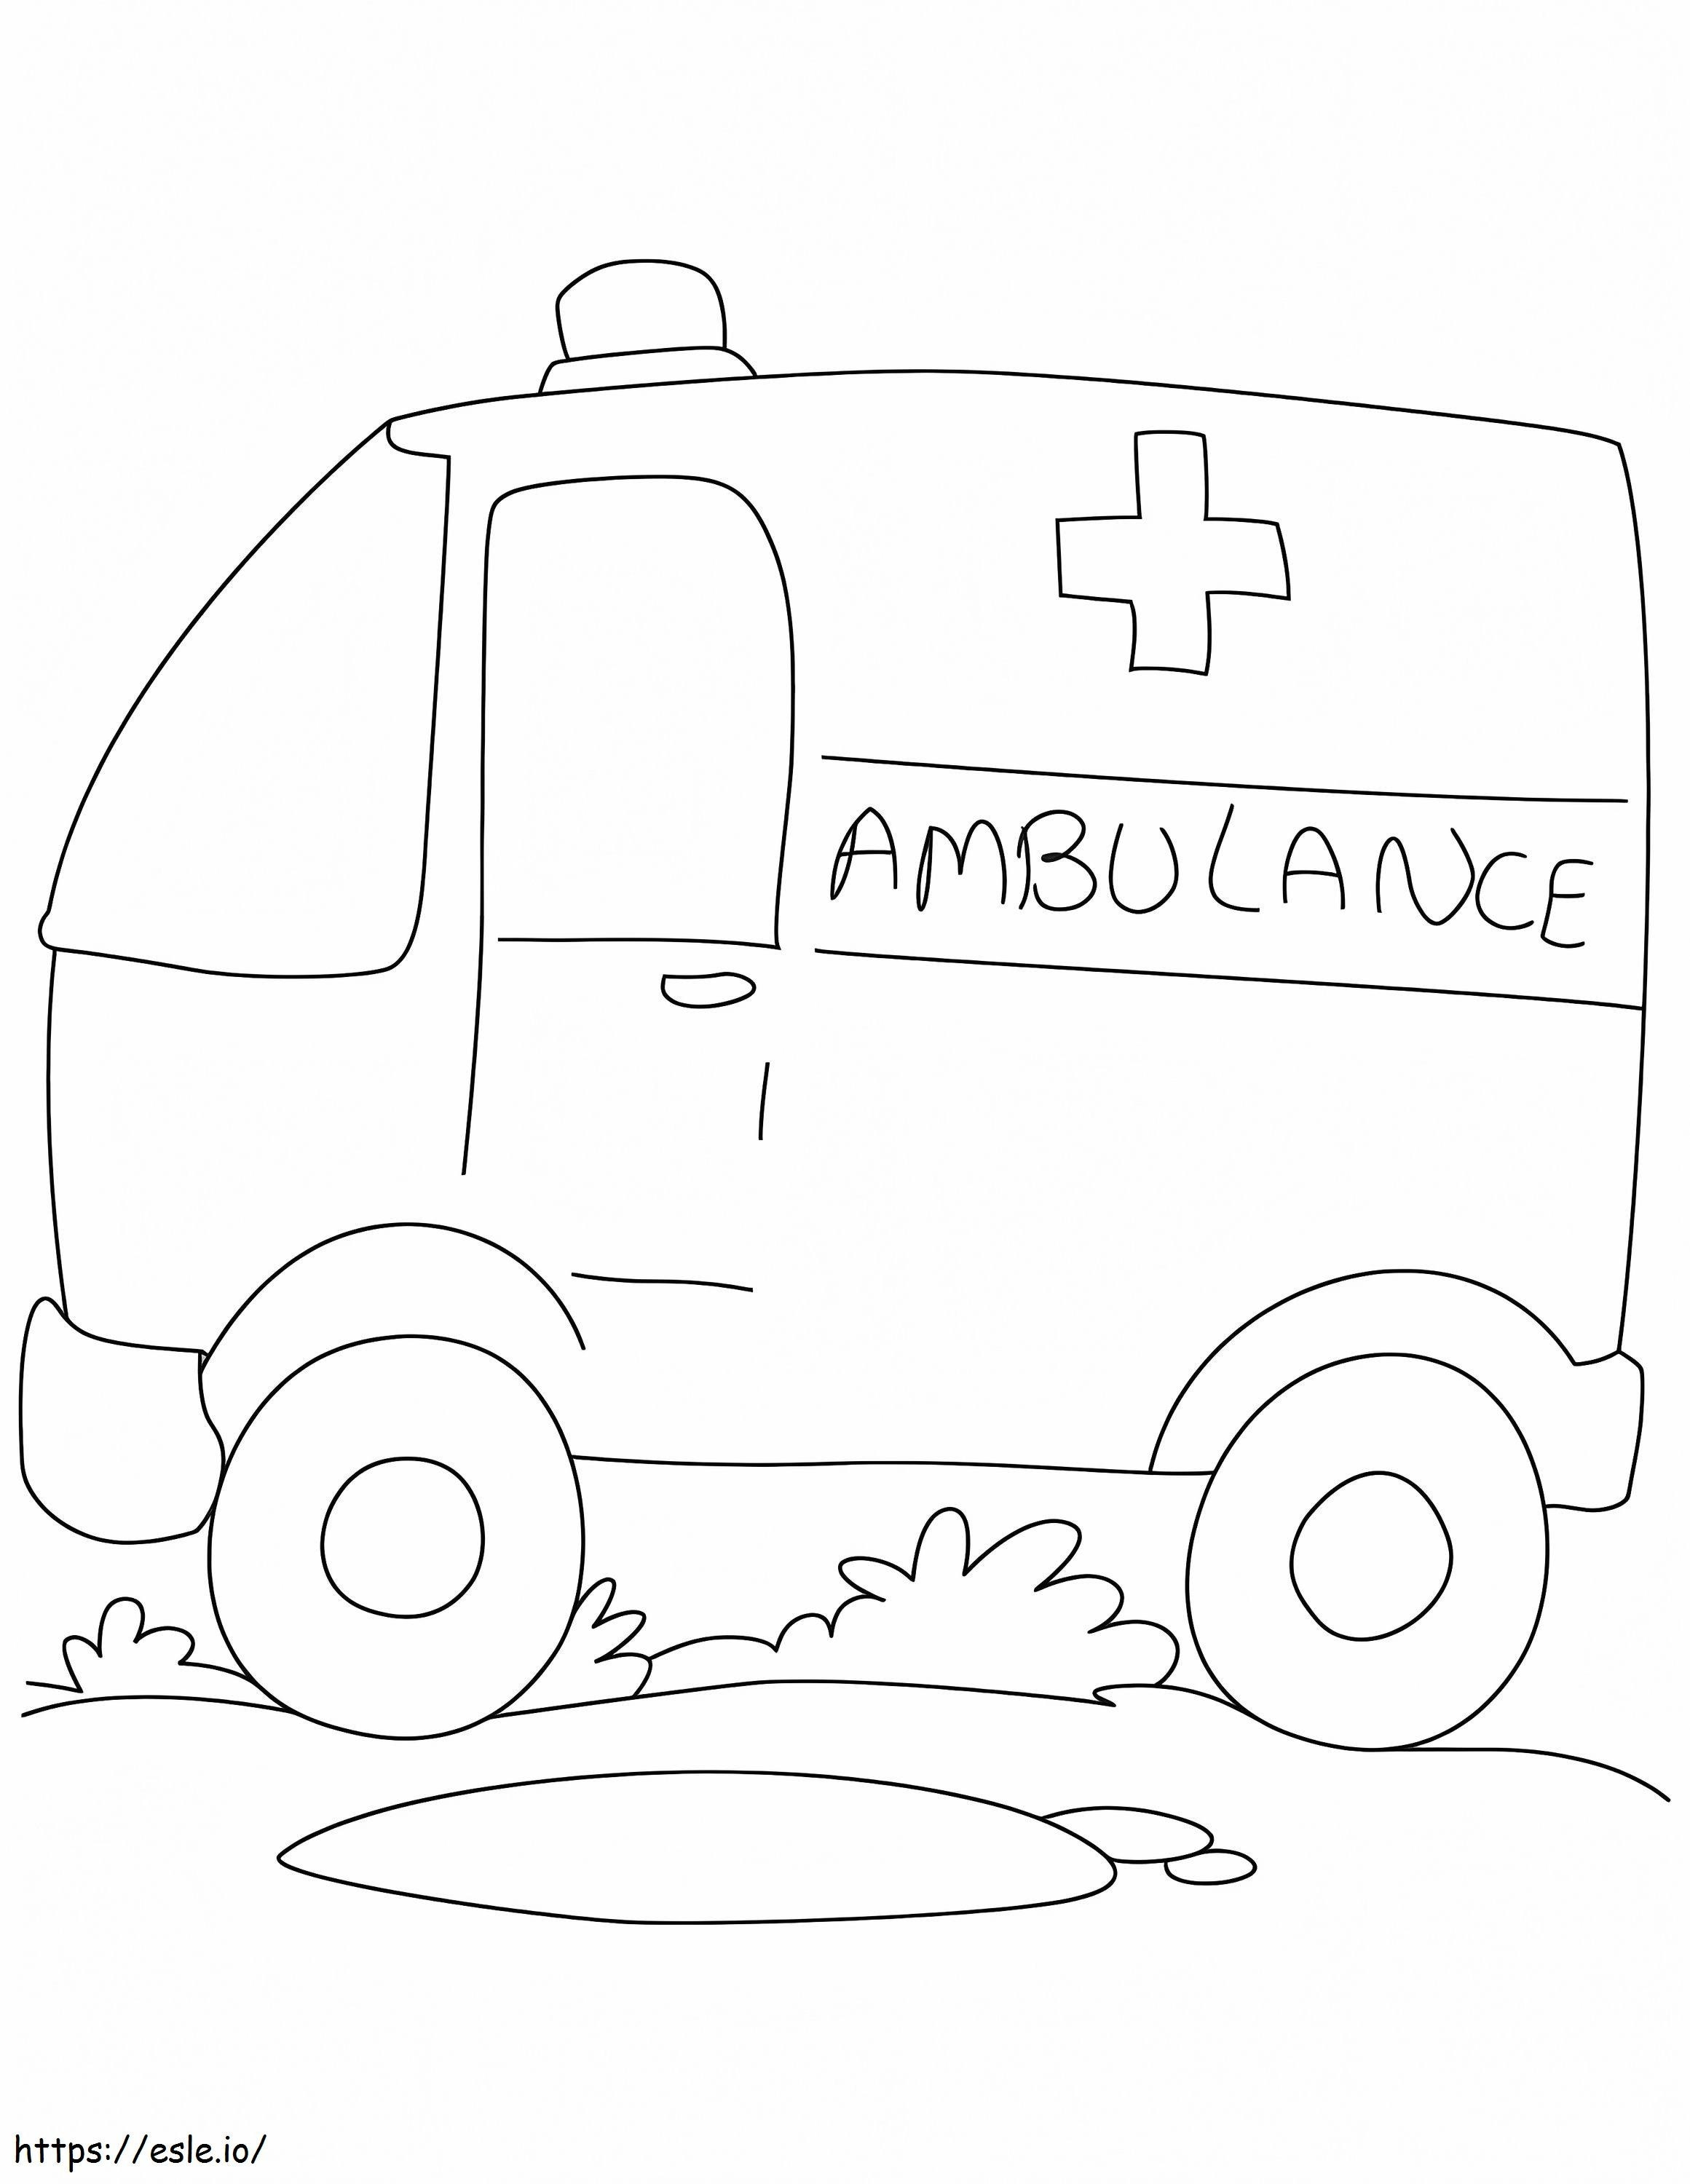 Ambulance Van coloring page